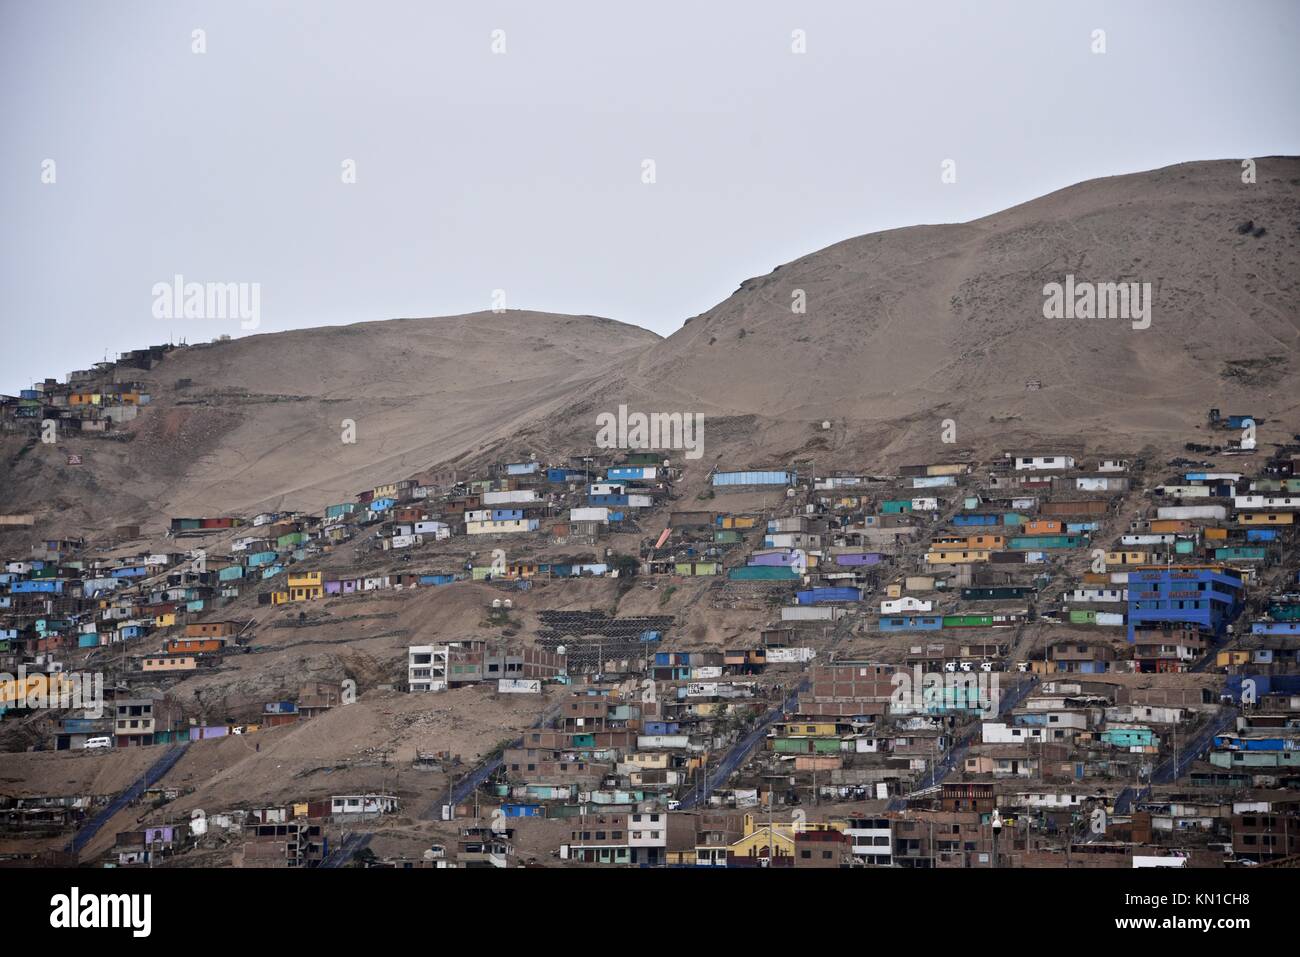 Les bâtiments des bidonvilles de colline à la périphérie de Lima, Pérou Banque D'Images